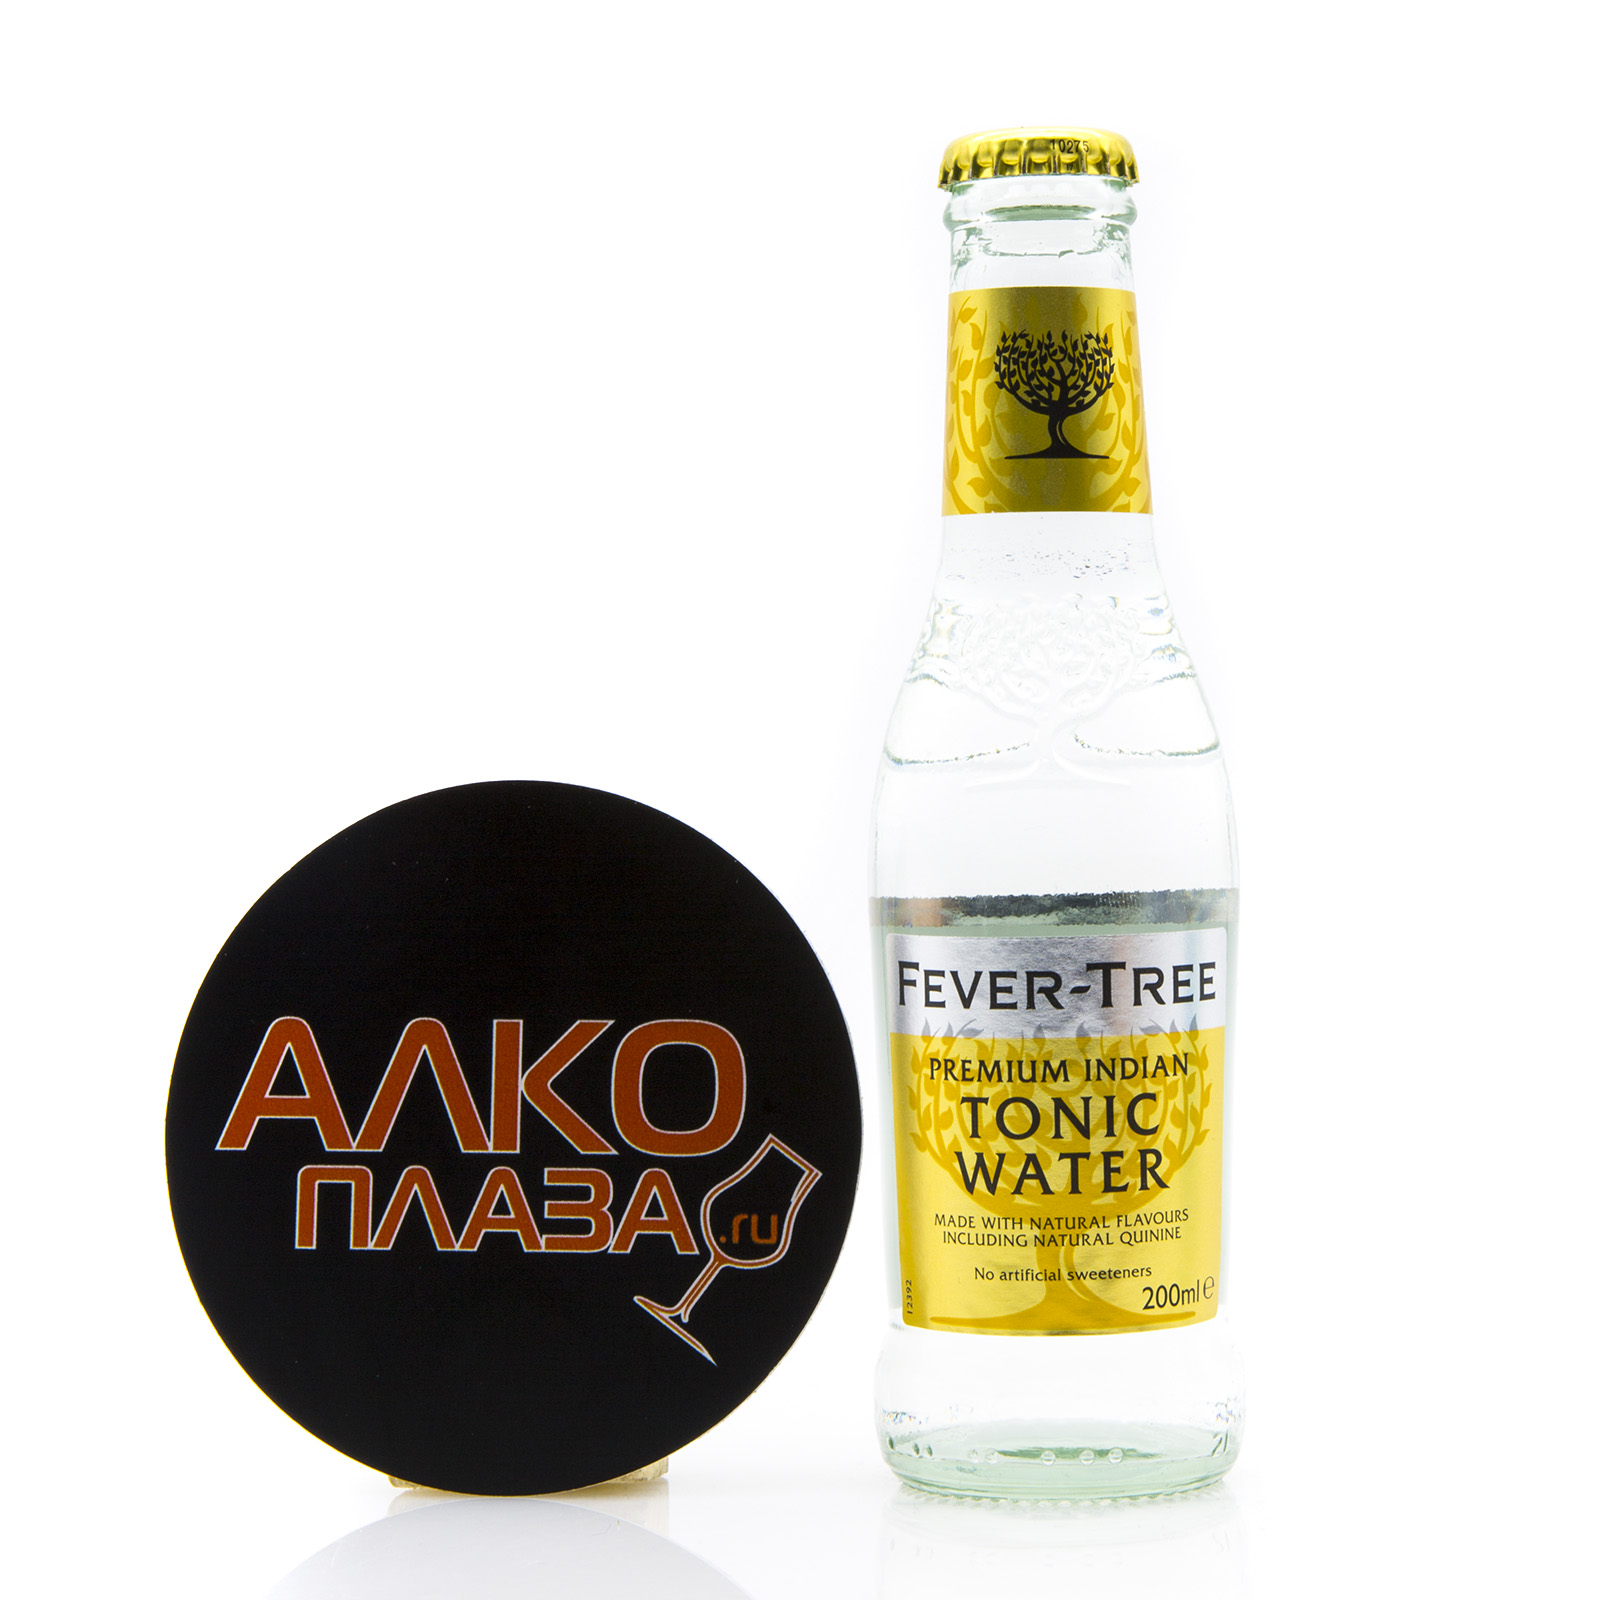 Fever-Tree Premium Indian Tonic Water 0.2 л - Февер-Три Премиум